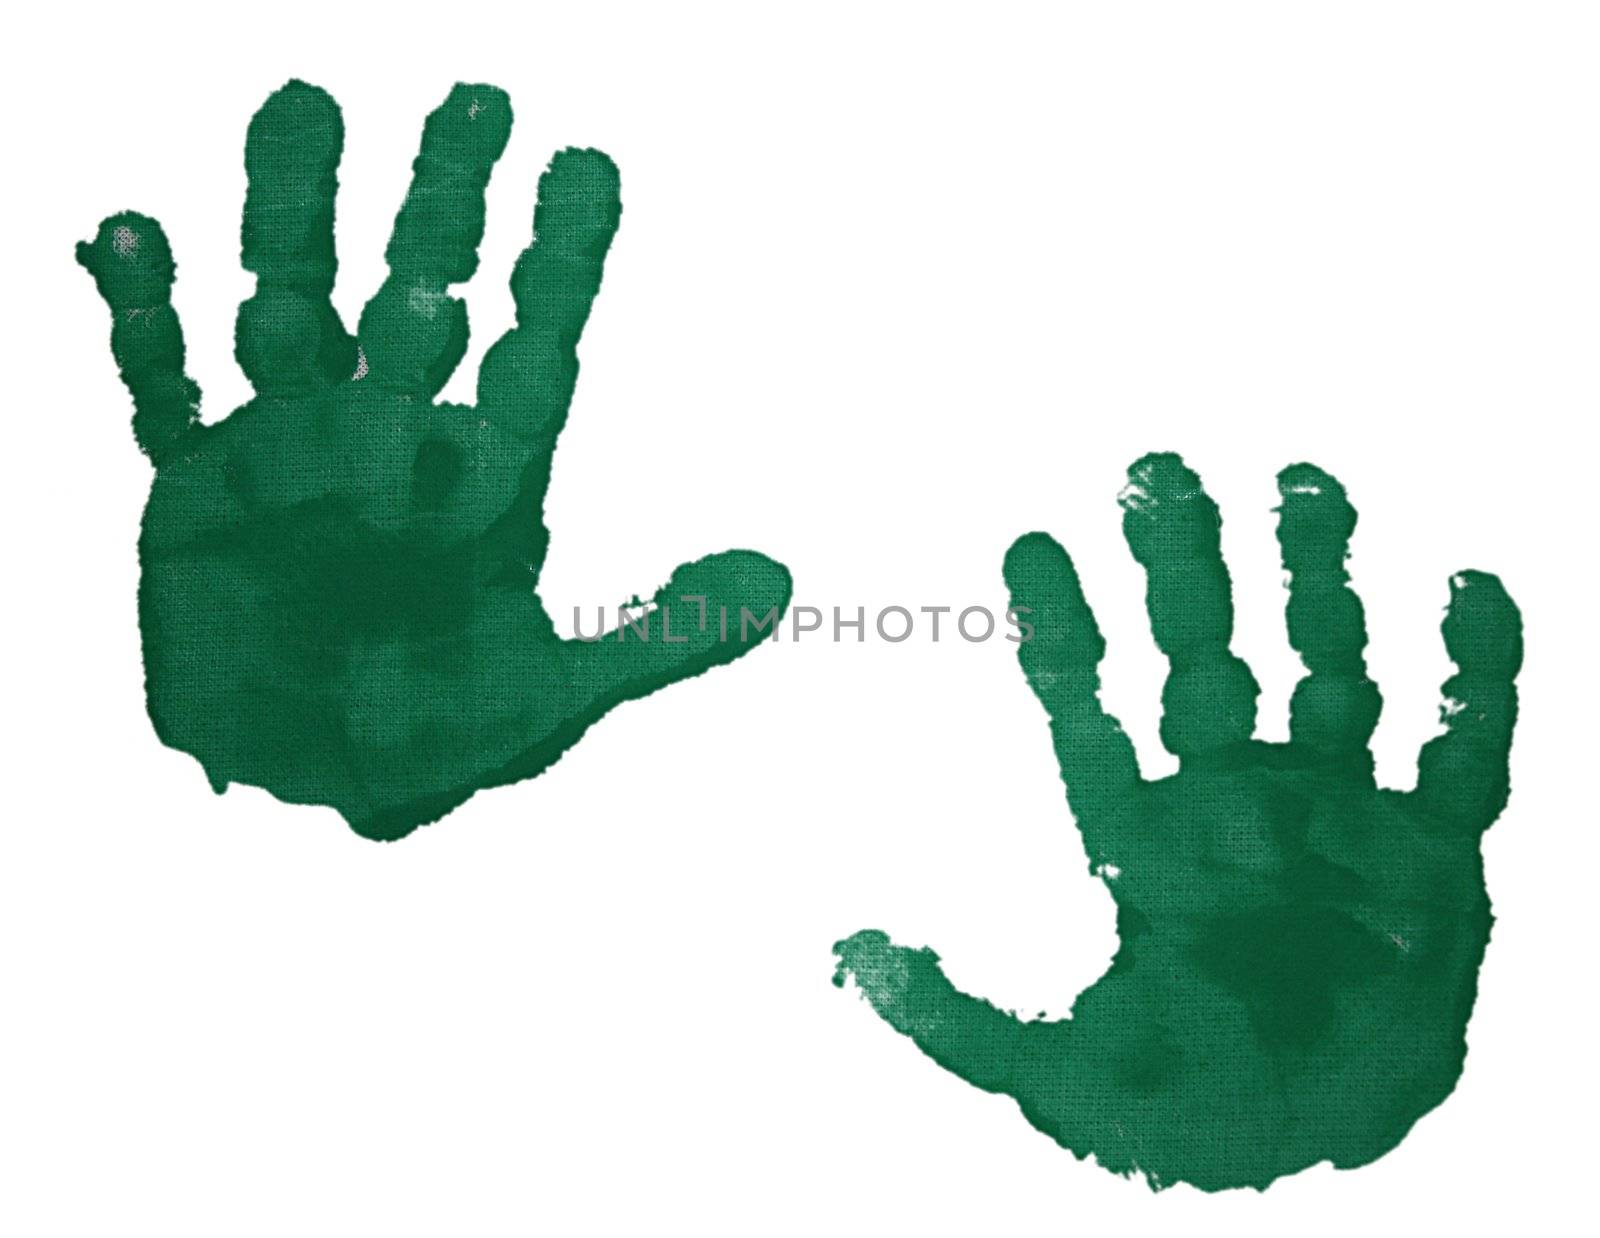 Green handprint in paint of two children's hands